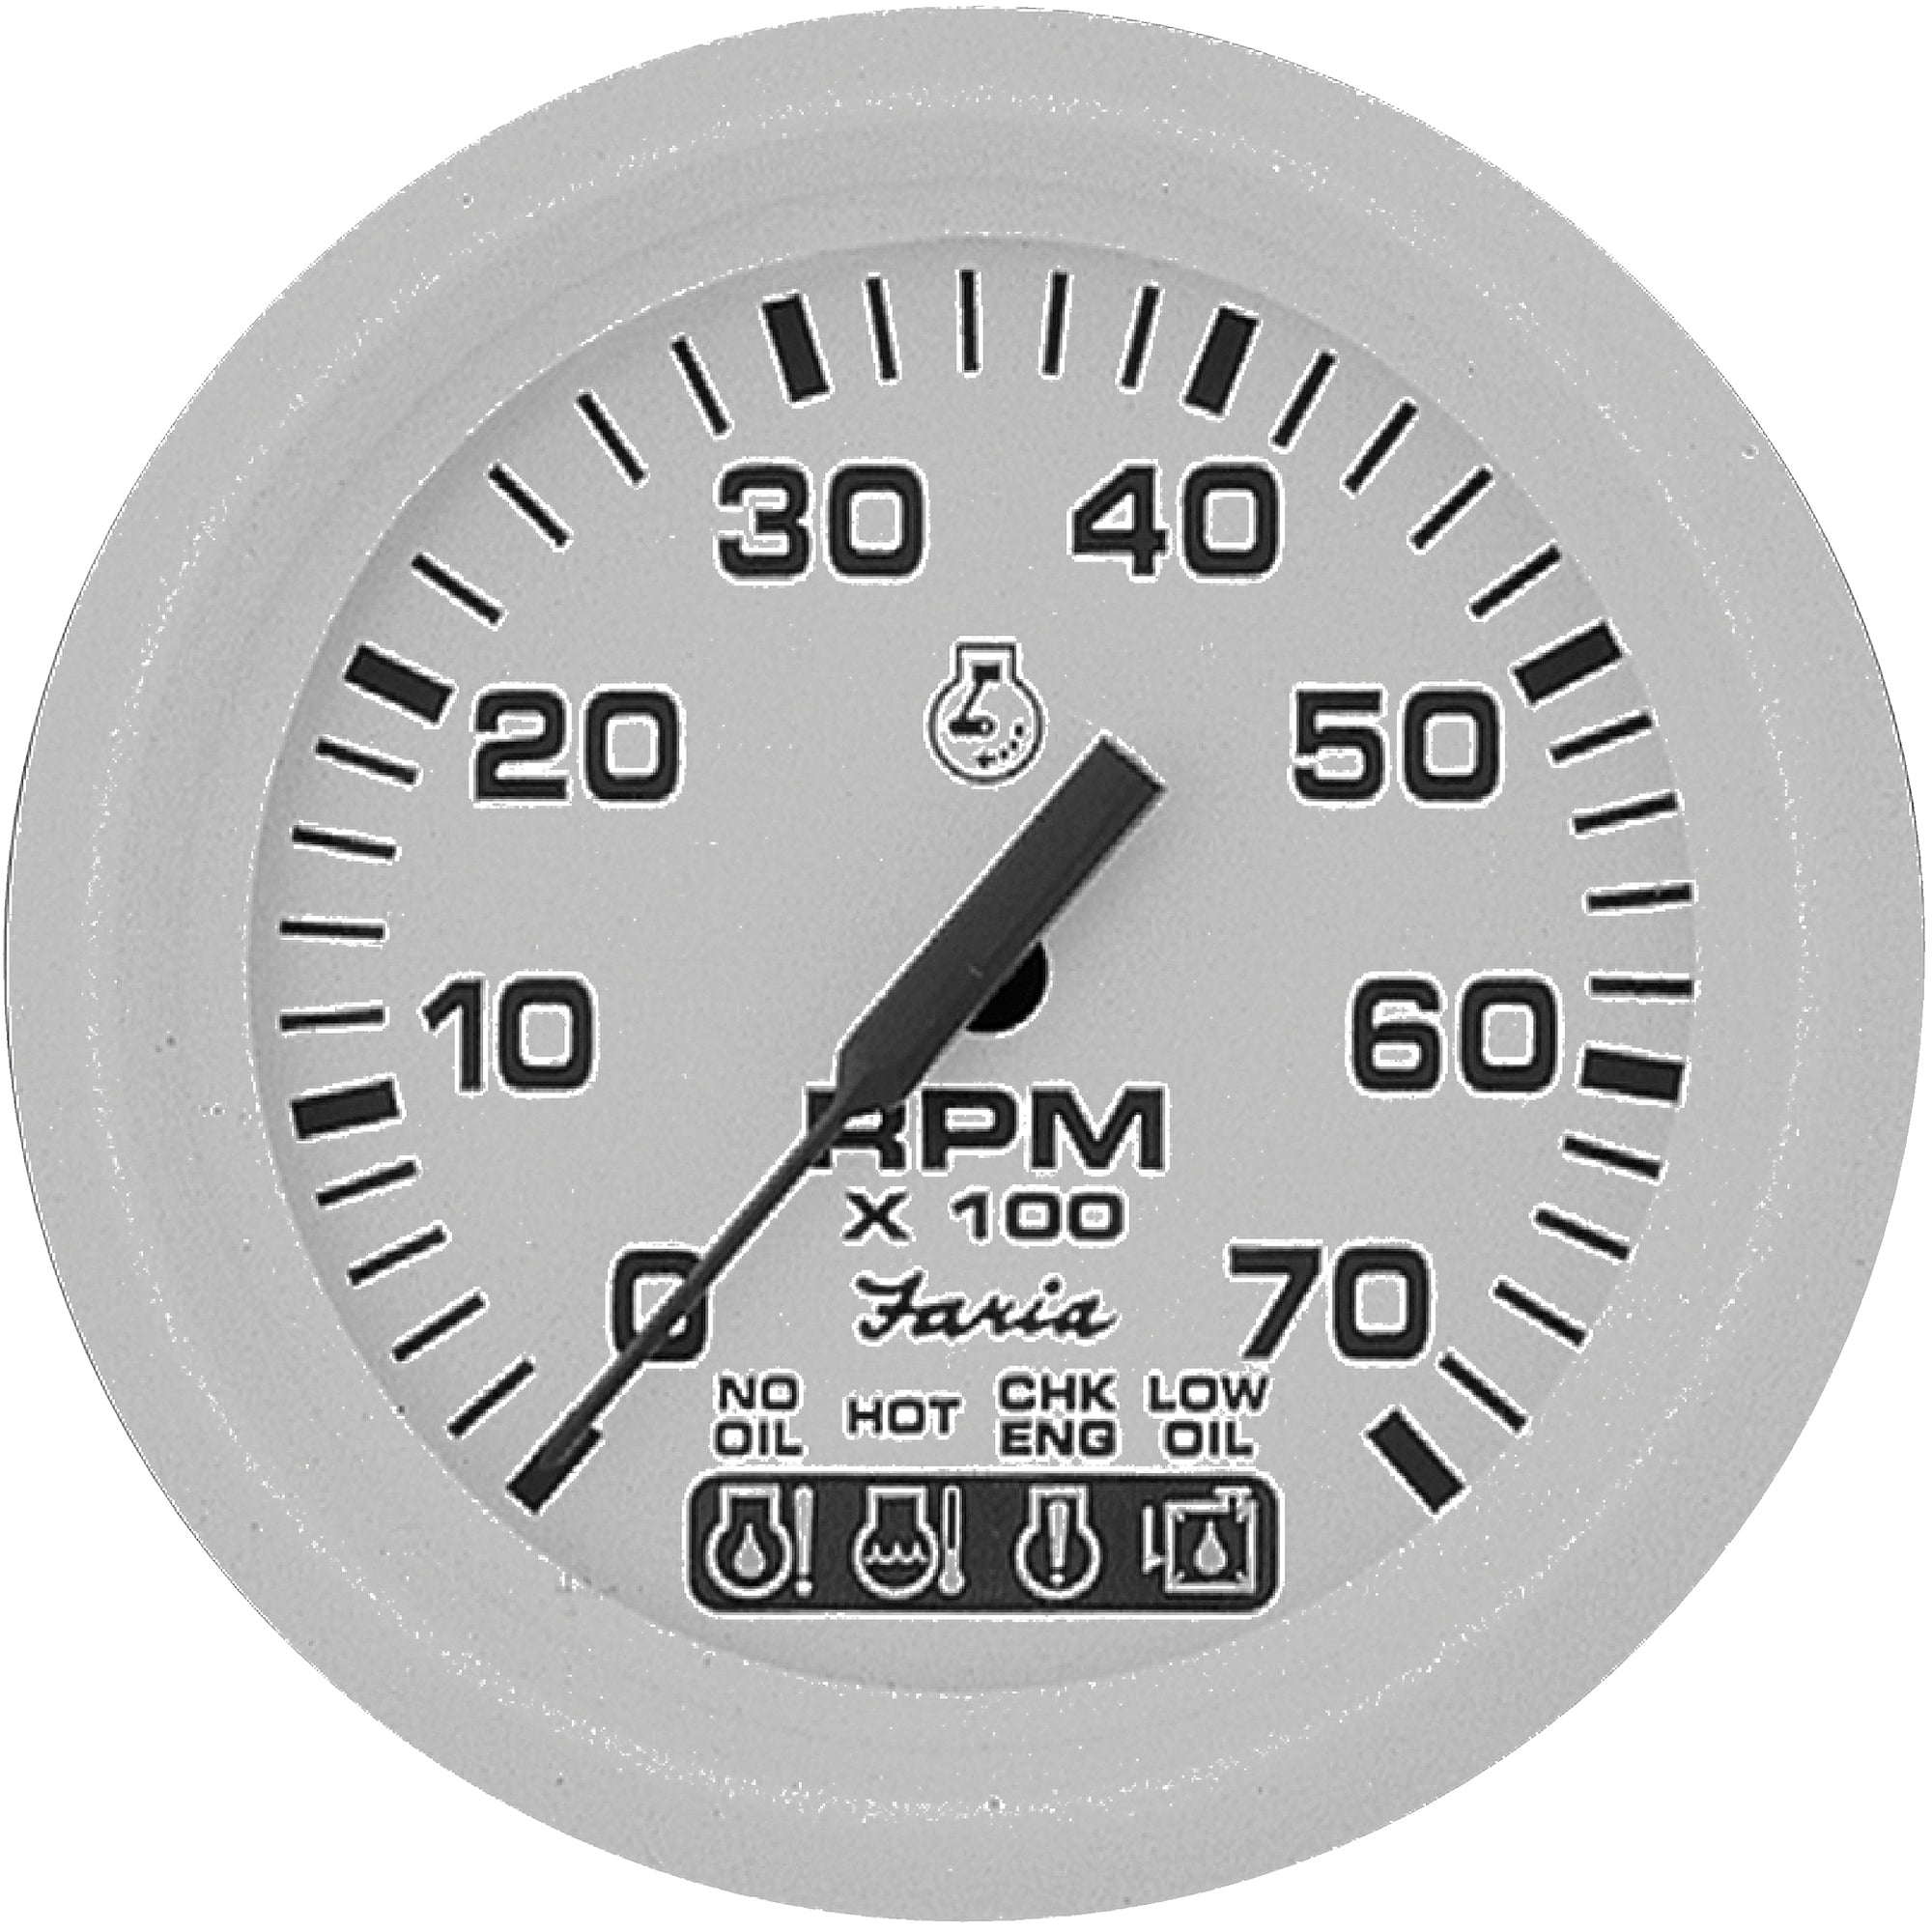 Gas - Suzuki Outboard 7,000 RPM Faria SS 4" Tachometer w/ Suzuki Monitor